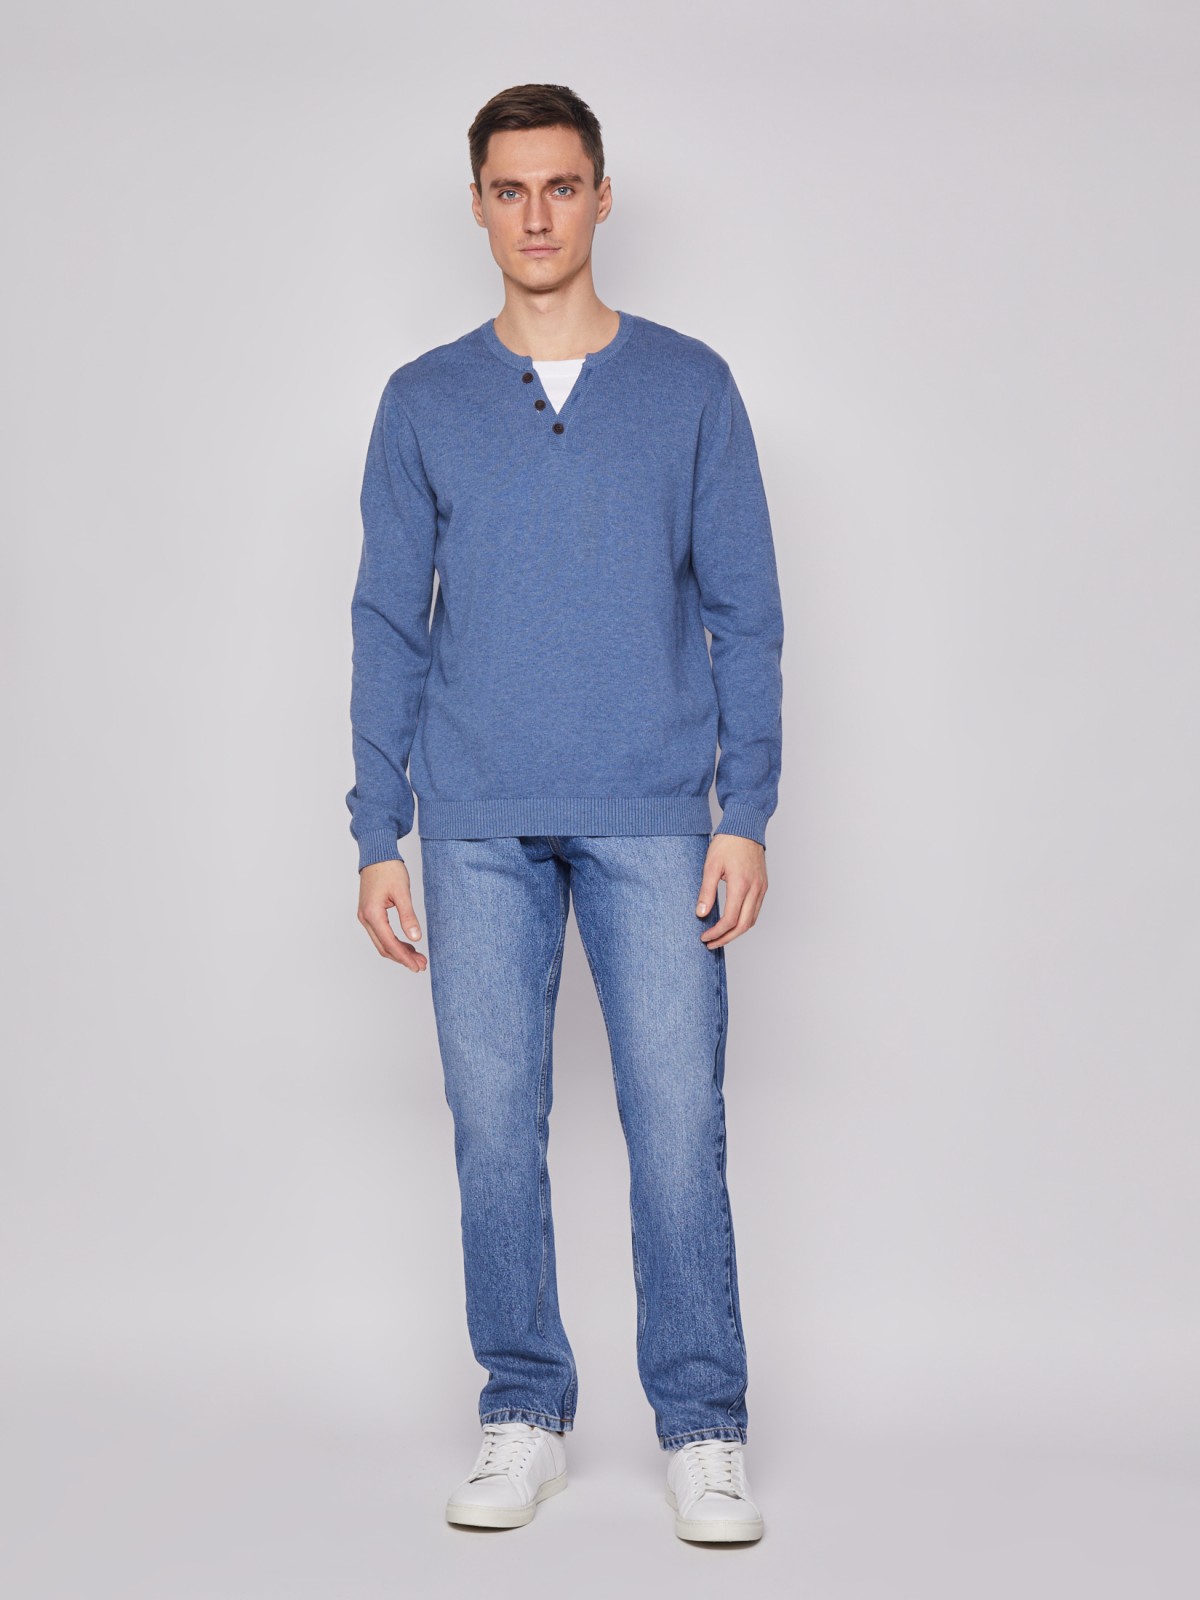 Комбинированный пуловер из хлопка zolla 212116765022, цвет голубой, размер M - фото 2